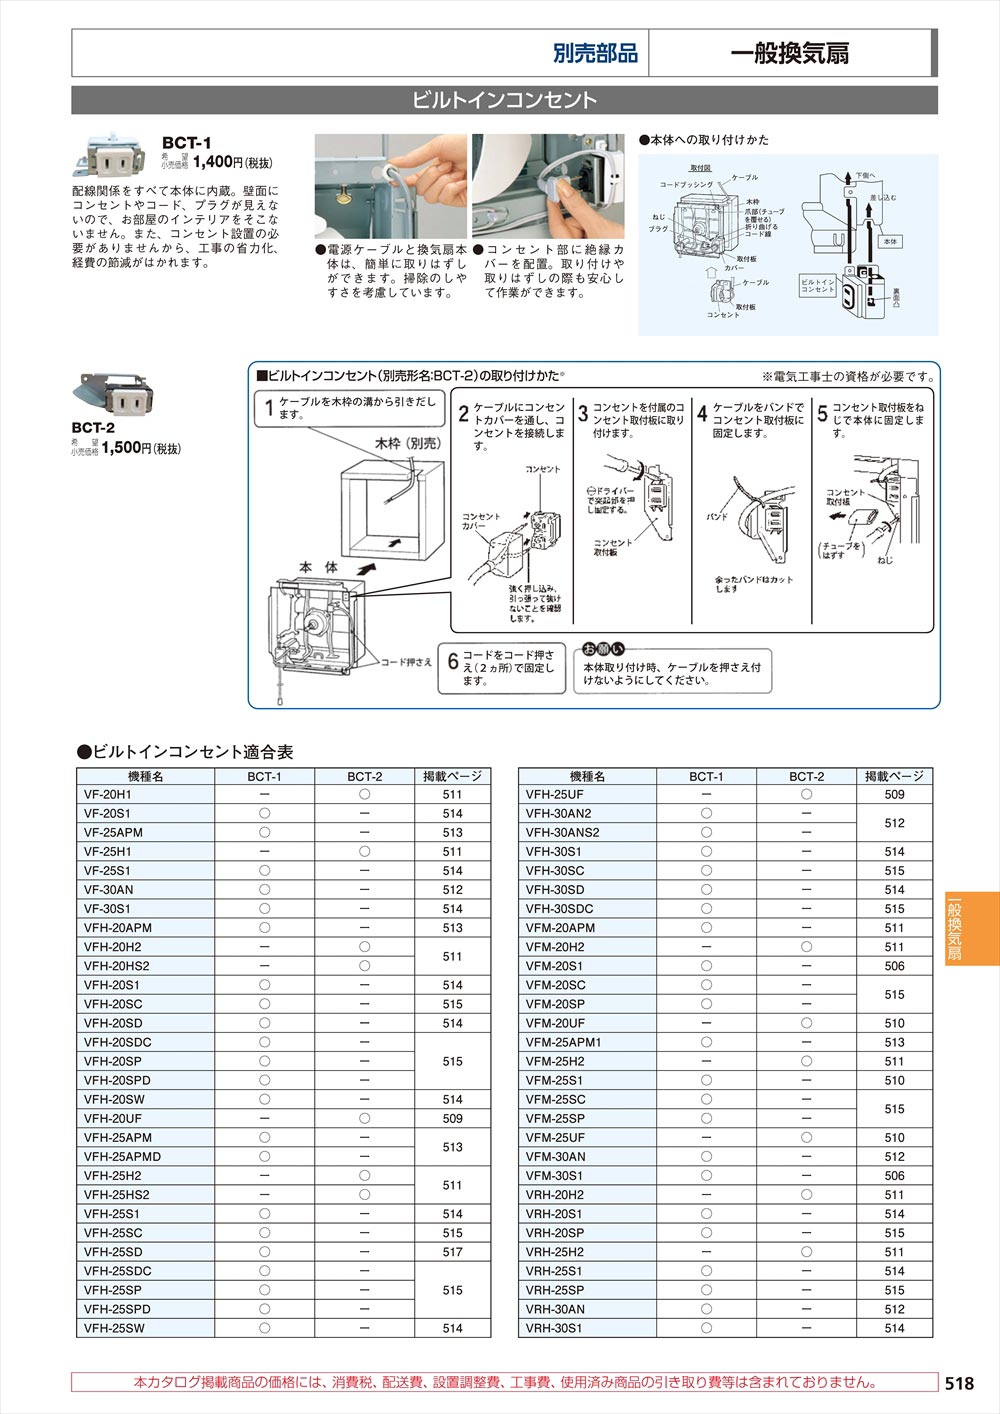 日本スプリュー M20x1.5 1D スプリュー 細目ねじ用 100個入り M20-1.5X1DNS - 10